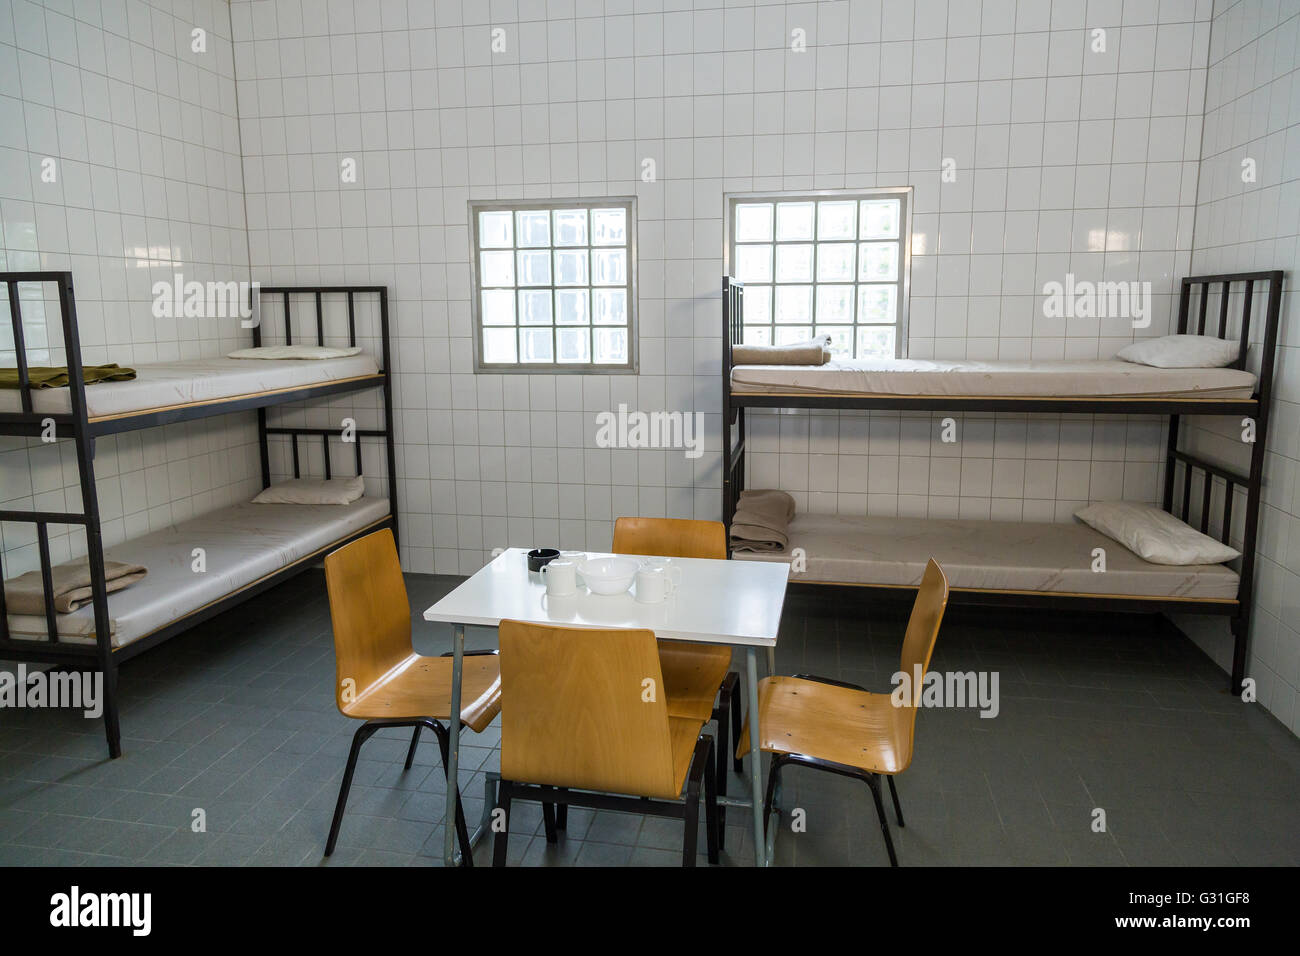 Bremen, Allemagne, cellule de garde à vue Banque D'Images